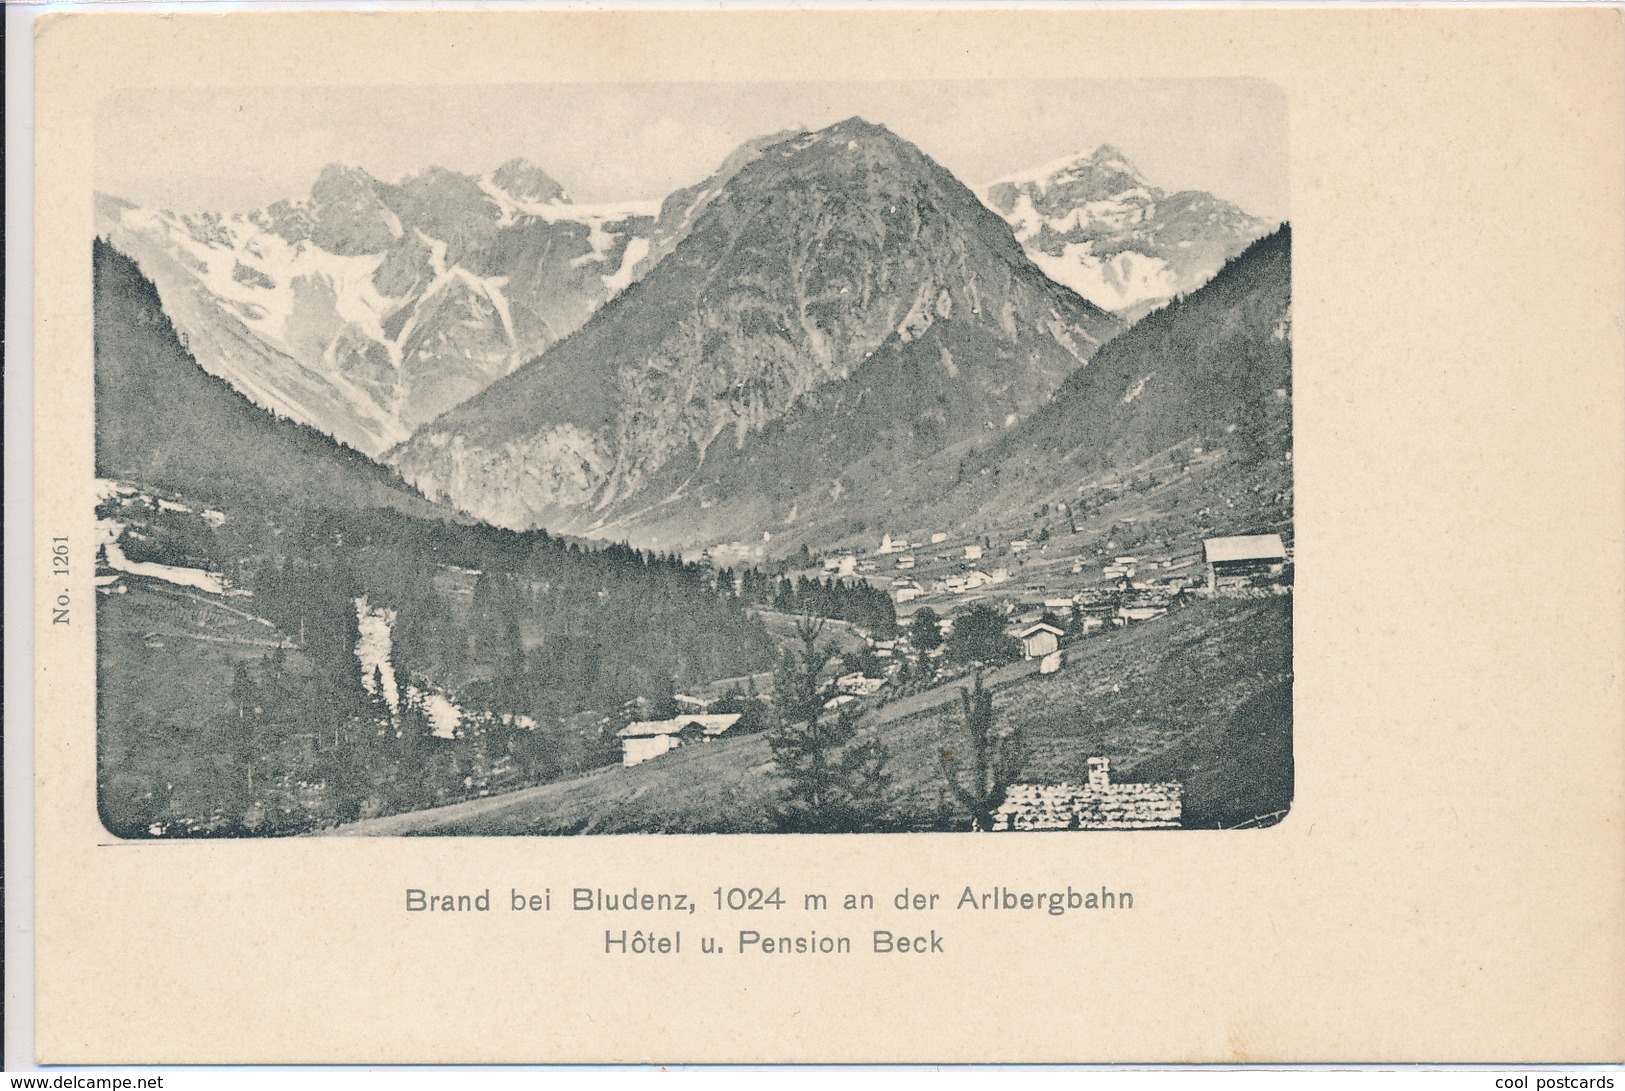 AUSTRIA, BRAND BEI BLUDENZ, HOTEL UND PENSION BECK, EX Cond. PC, Unused, Pre 1904 - Bludenz